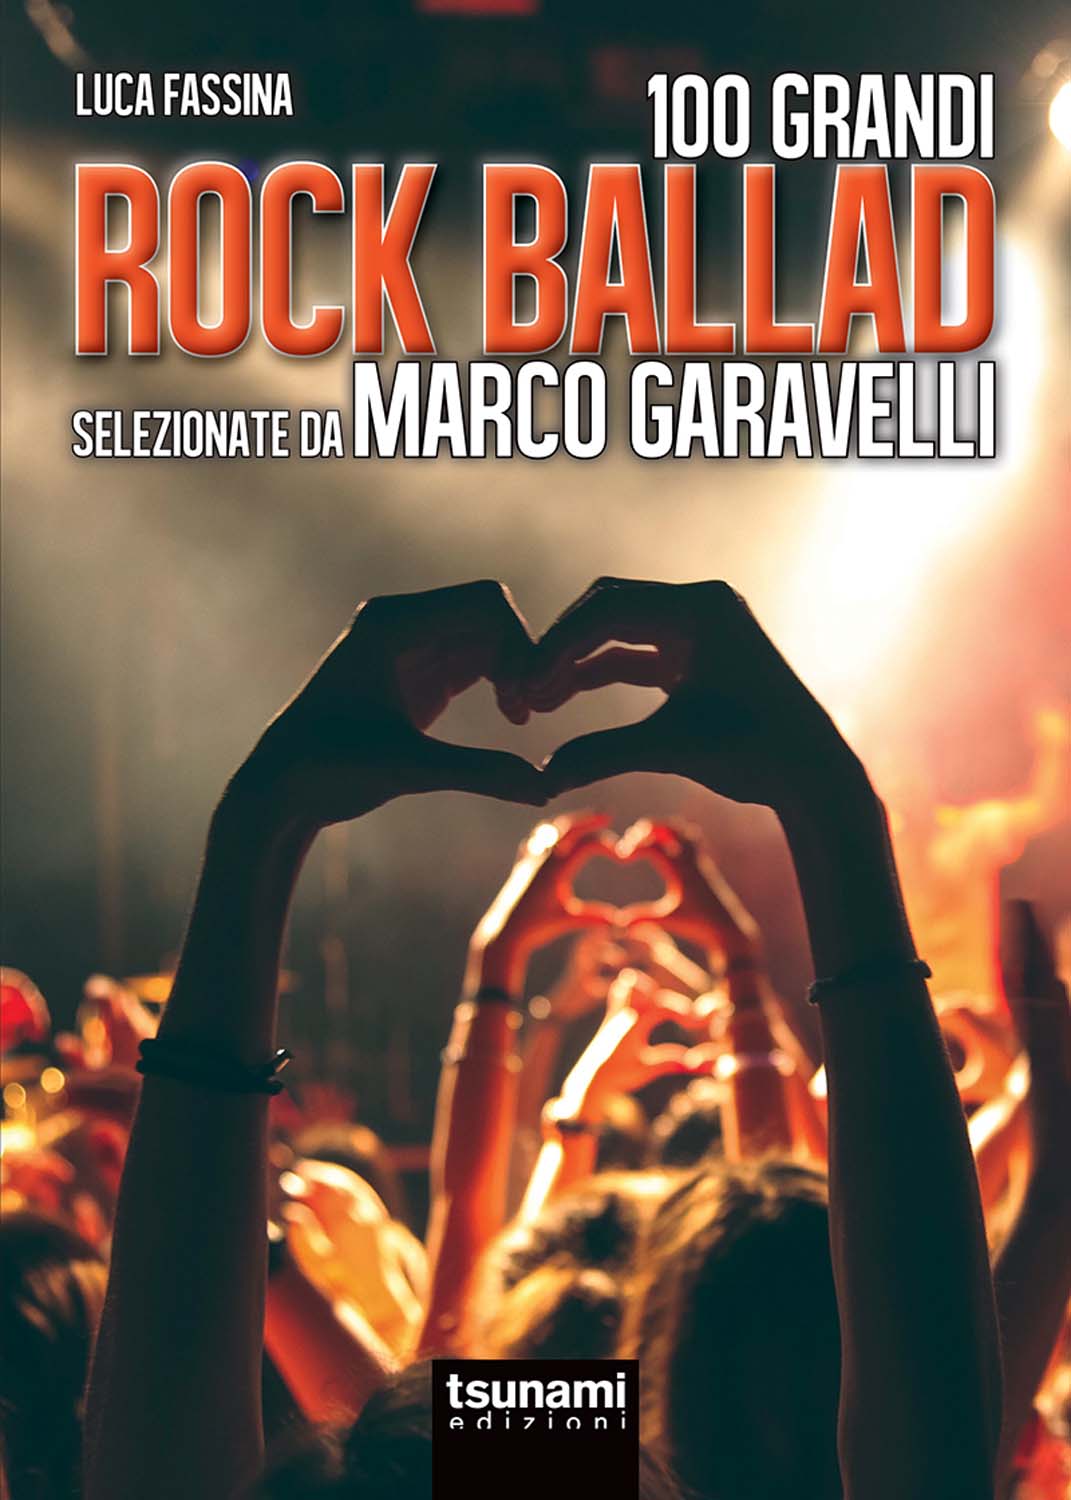 Libri Marco Garavelli / Luca Fassina - Rock Ballads Selezionate Da Marco Garavelli NUOVO SIGILLATO, EDIZIONE DEL 04/05/2017 SUBITO DISPONIBILE